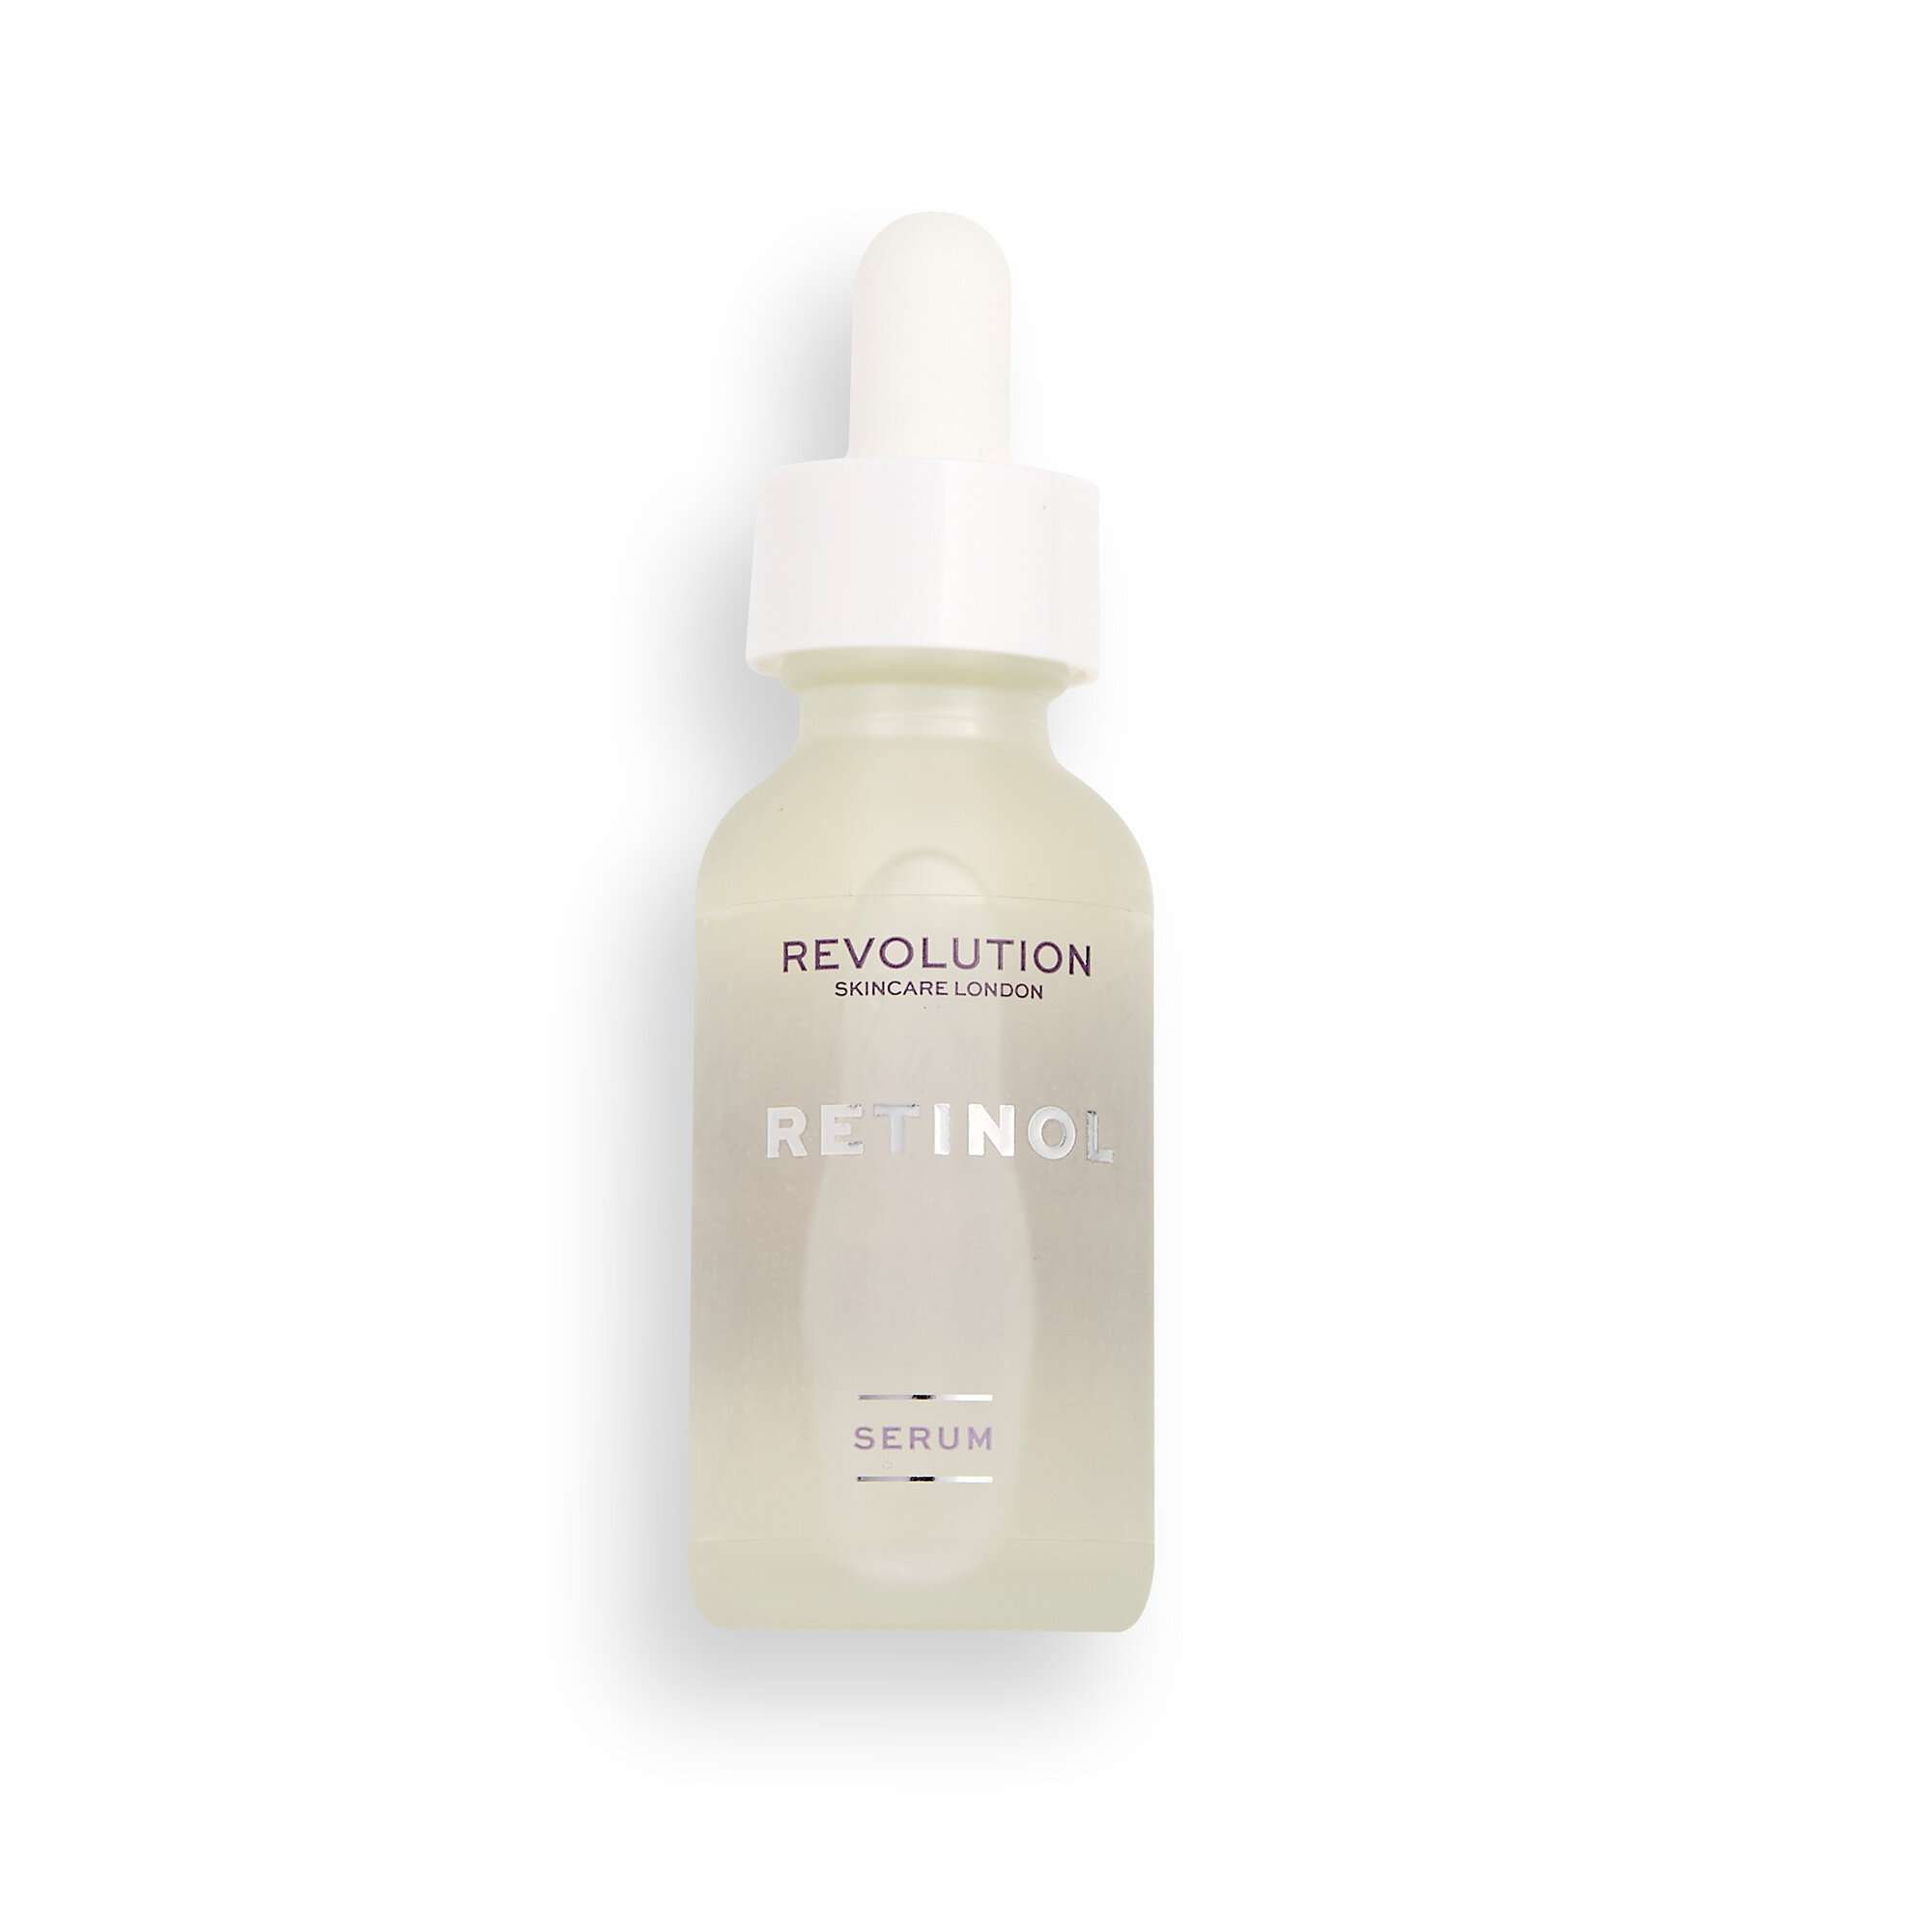 Revolution Skincare 0.2% Retinol Smoothing Serum